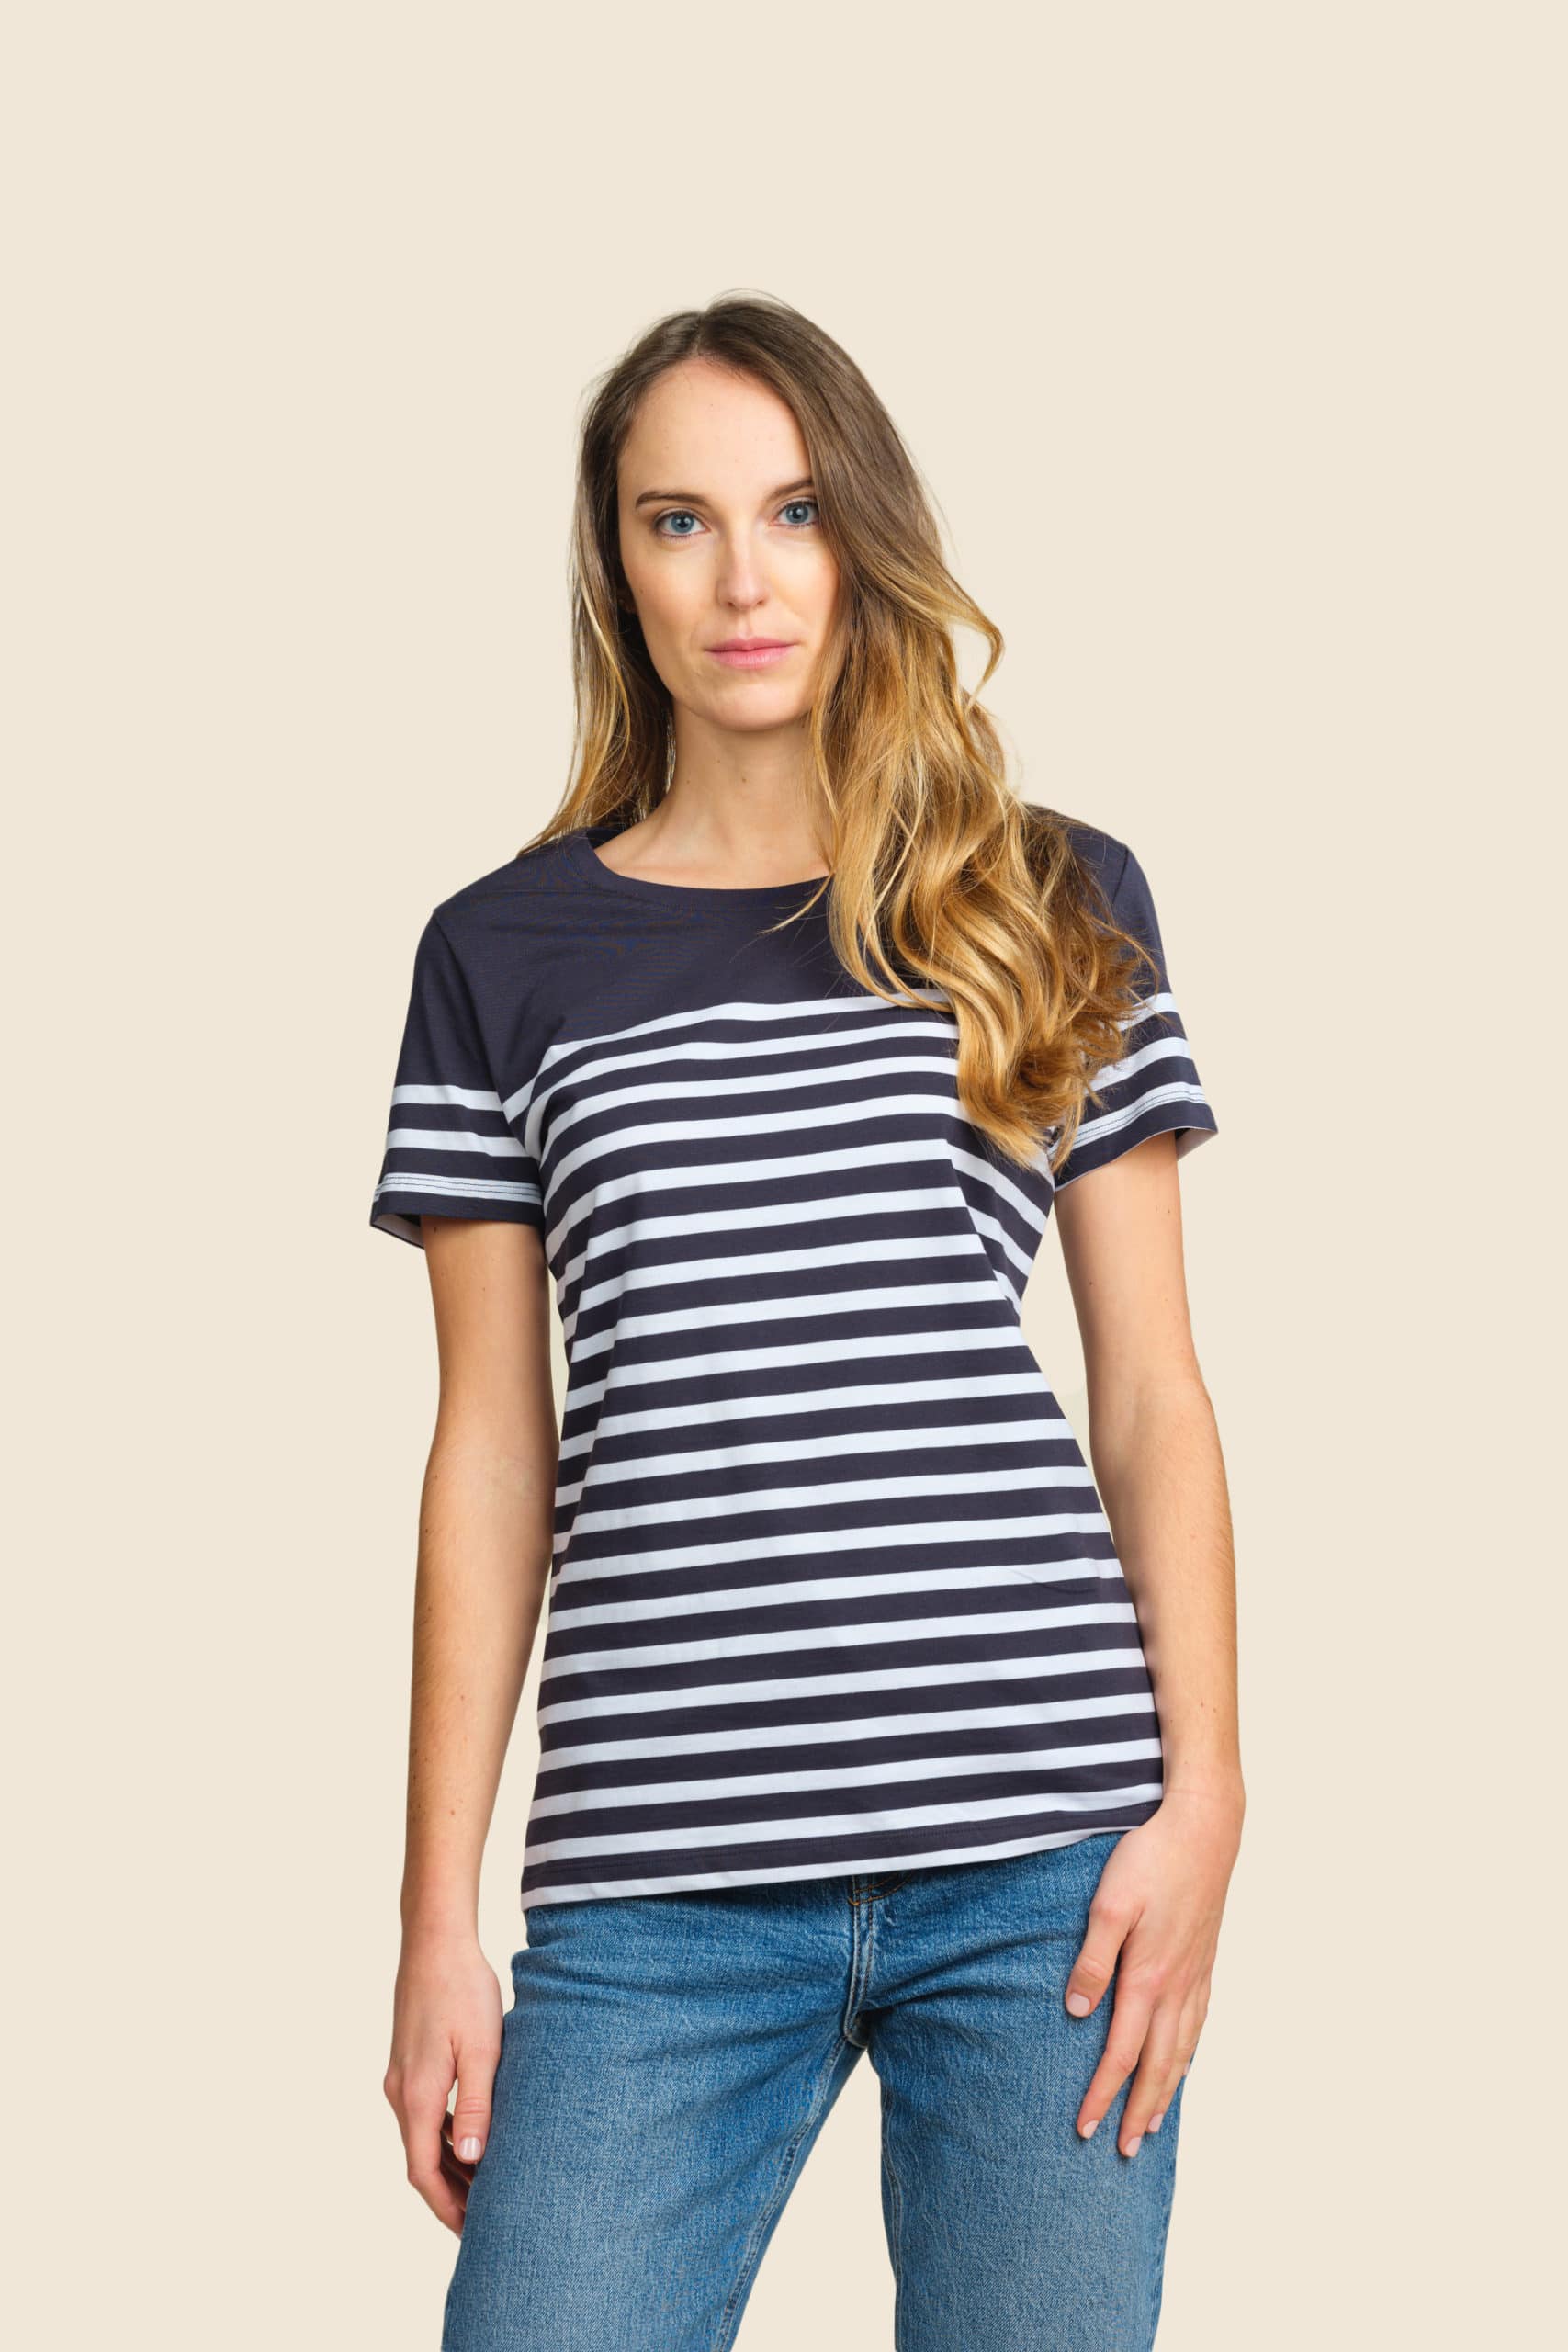 t-shirt bio marinière femme personnalisable - Icone Design